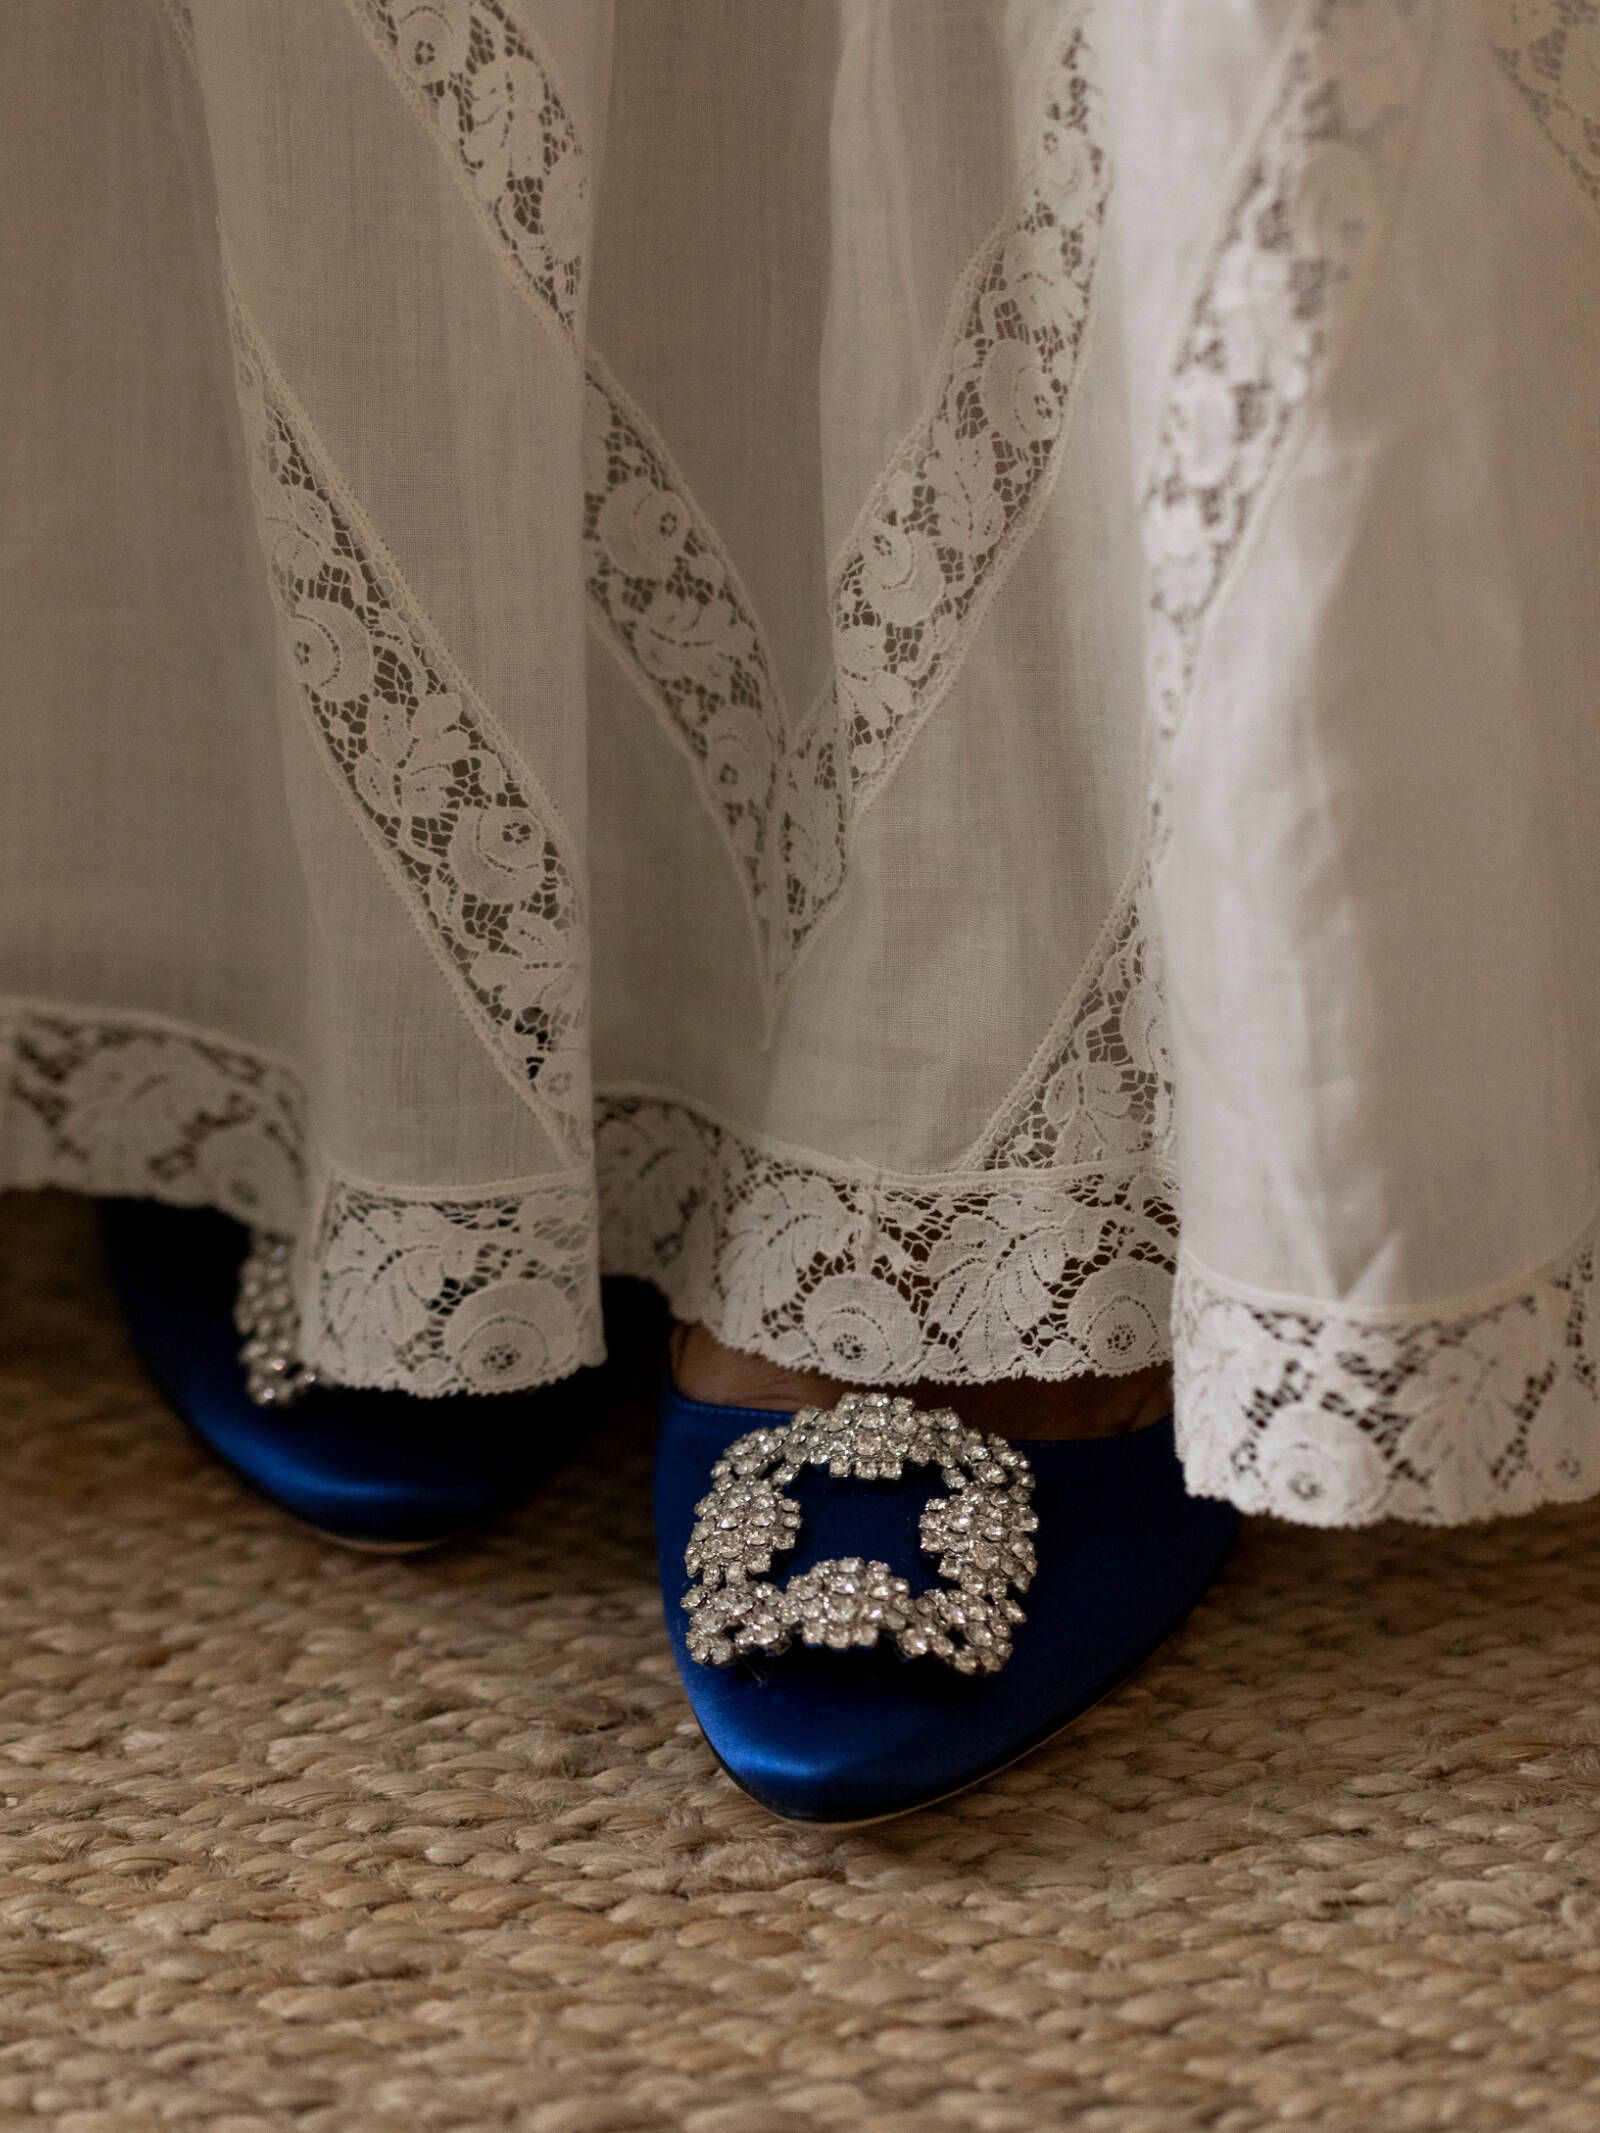 el día de maite: boda en la granja, un vestido de novia clásico de caprile y unos zapatos de tacón icónicos